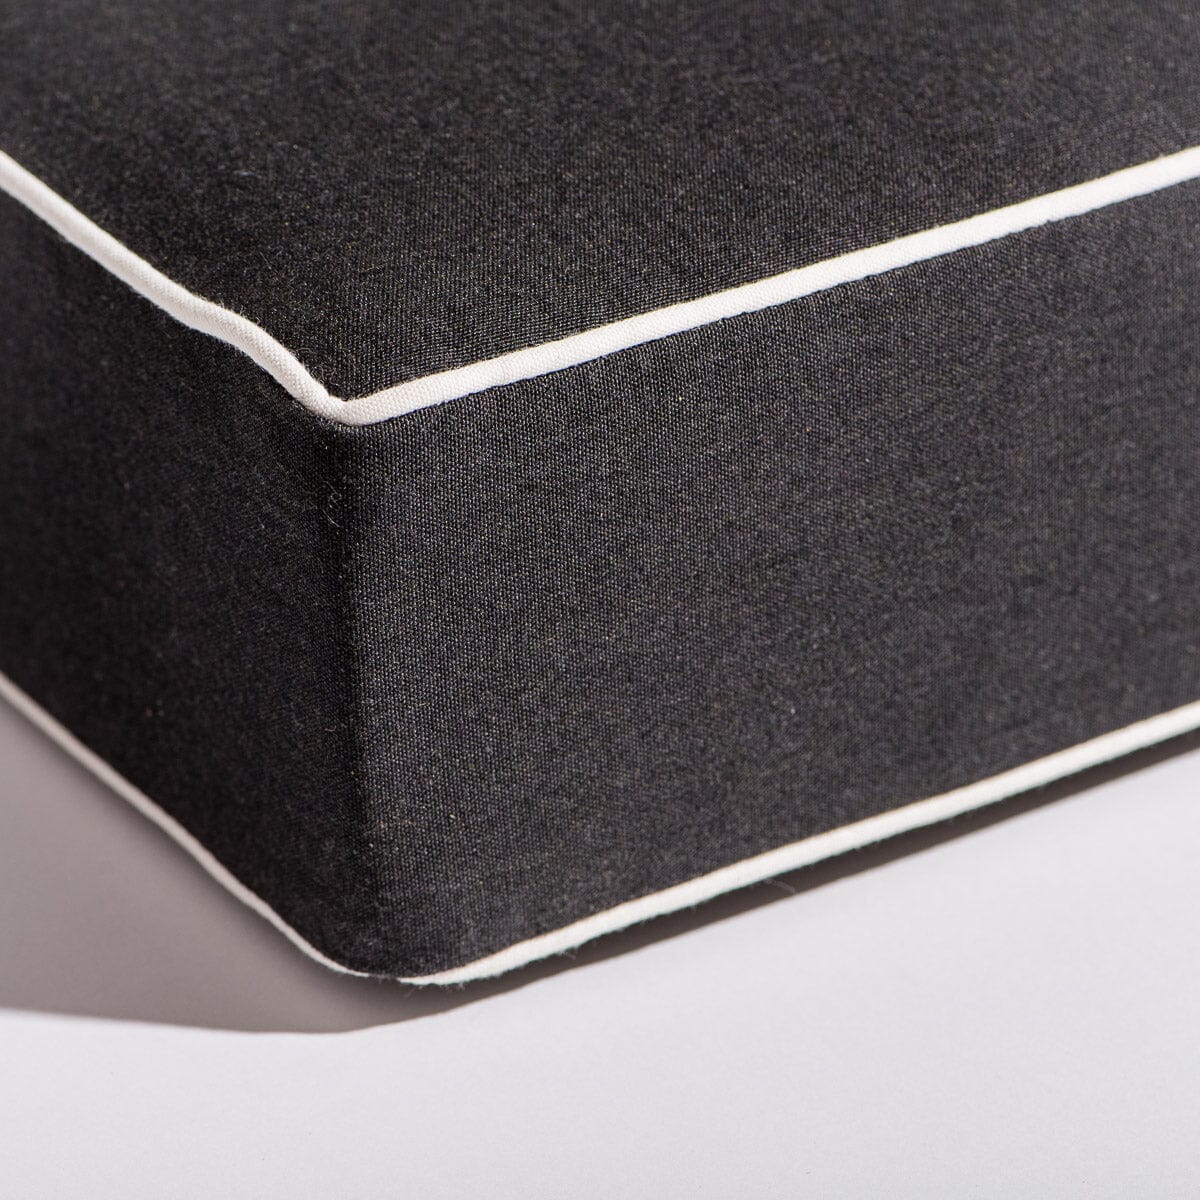 The Al Fresco Sun Lounger Cushion - Rivie Black Al Fresco Sun Lounger Cushions Business & Pleasure Co 